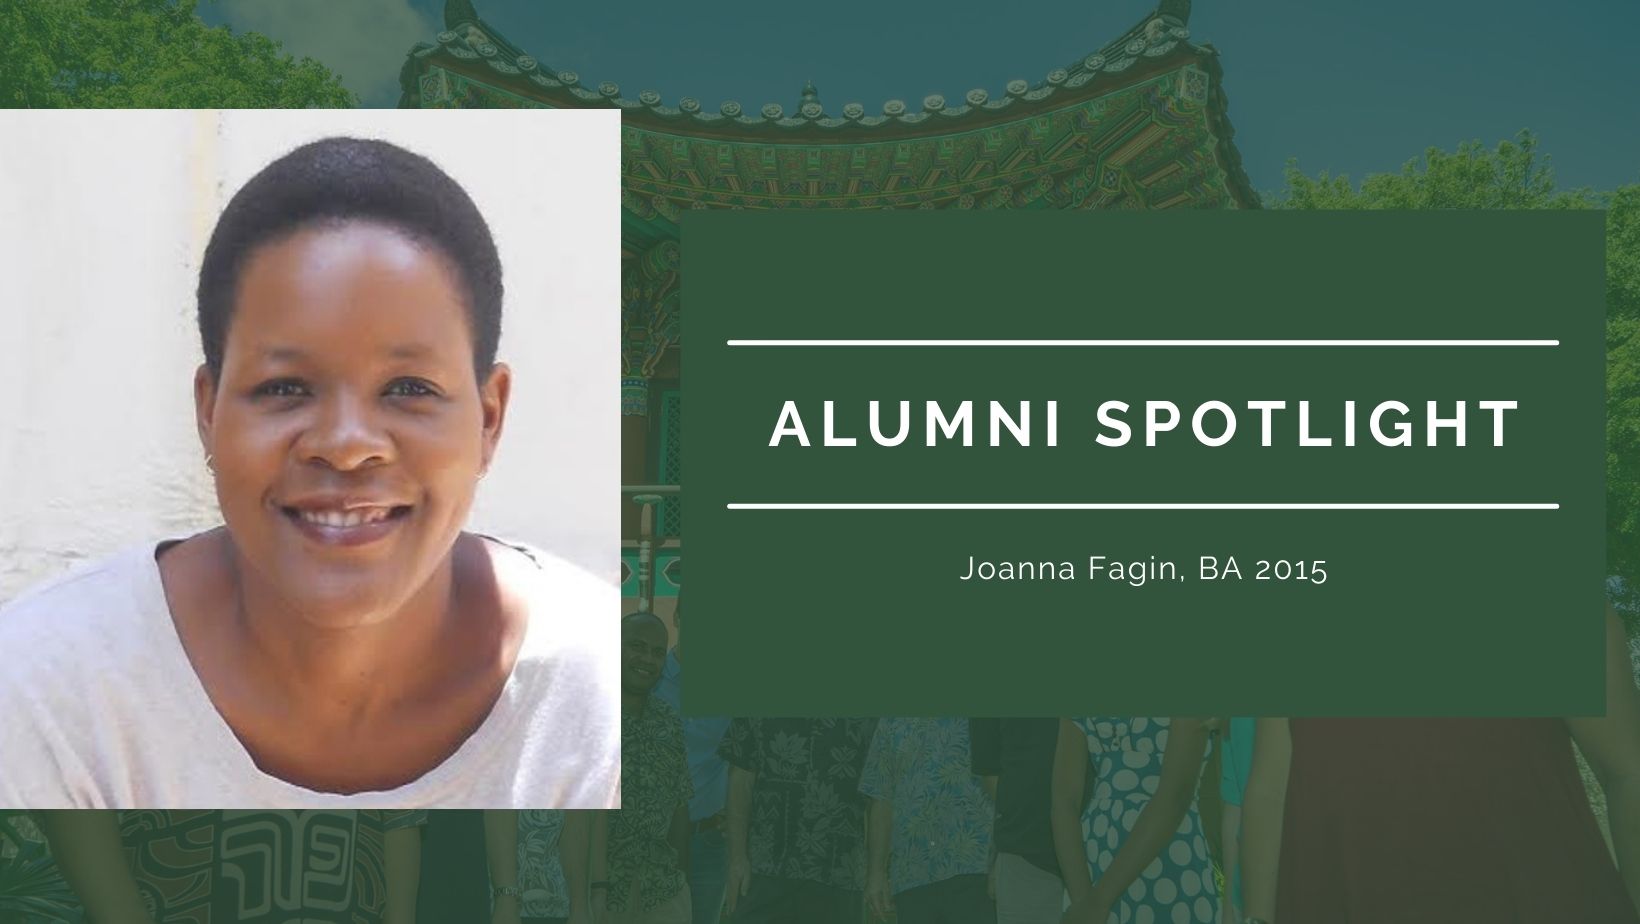 Alumni Spotlight: Joanna Fagin